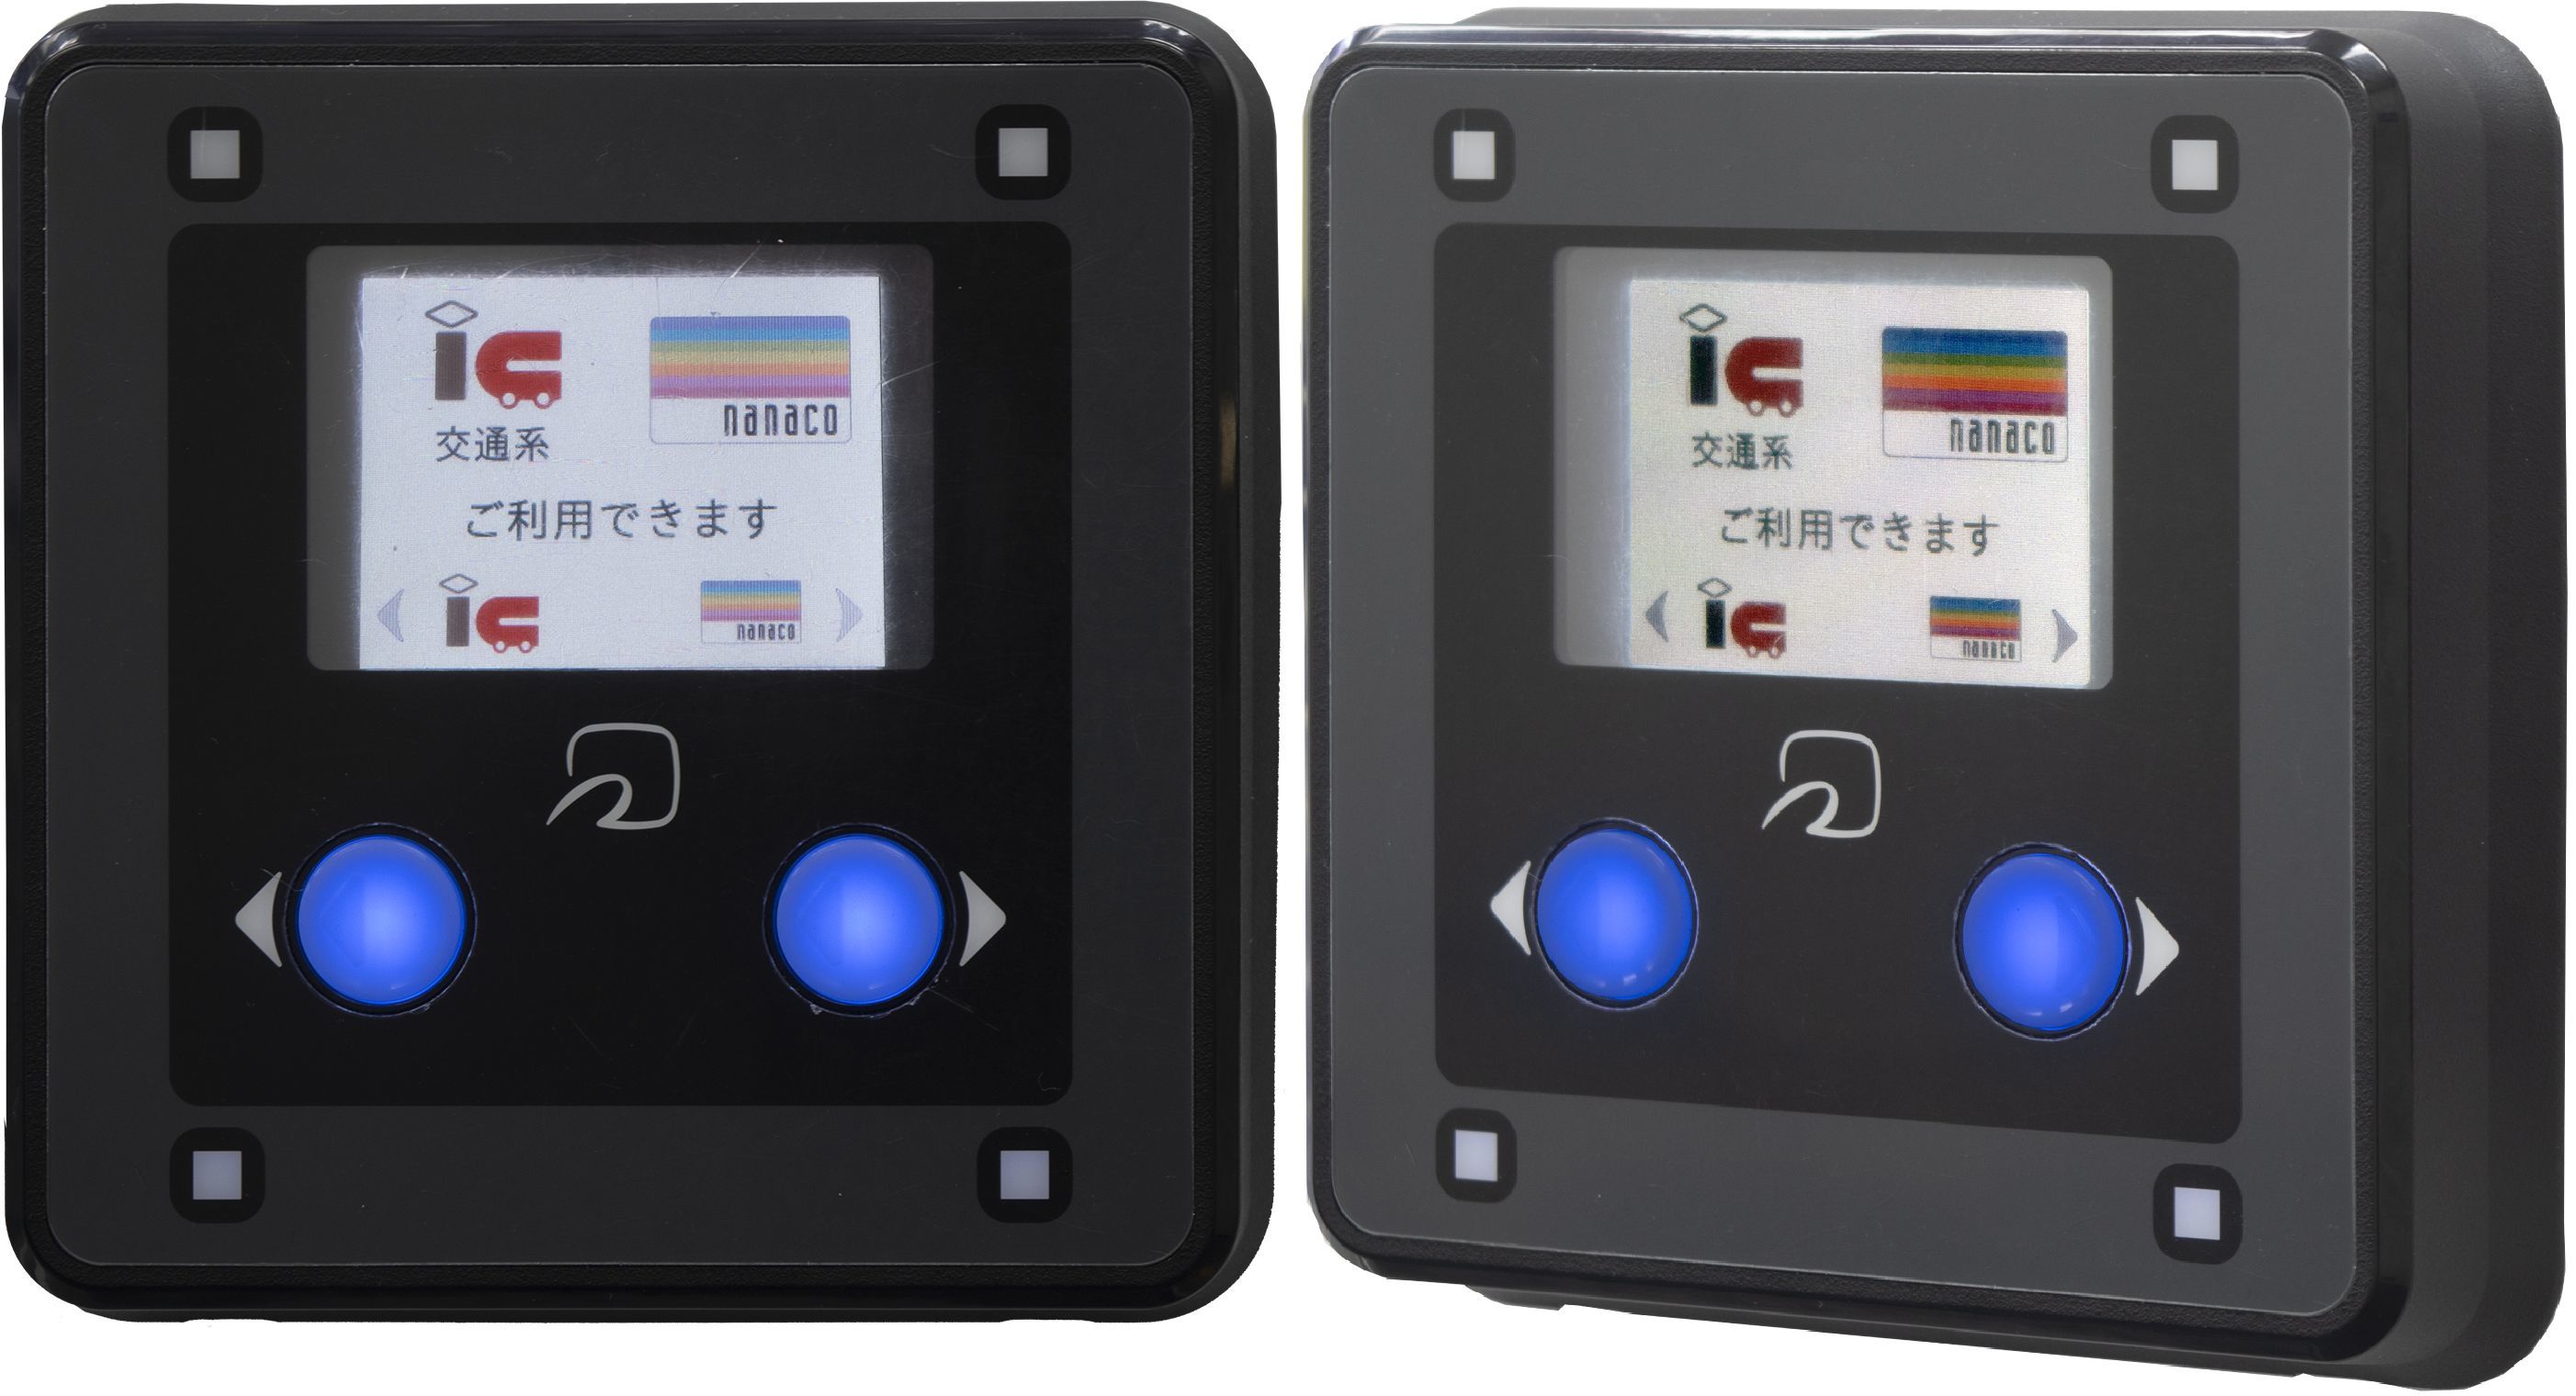 日本自動販売協会、
自動販売機のキャッシュレス決済普及を目指し、
日本コンラックスの電子決済端末ME-10を
「JAMA推奨電子マネー」に採用決定